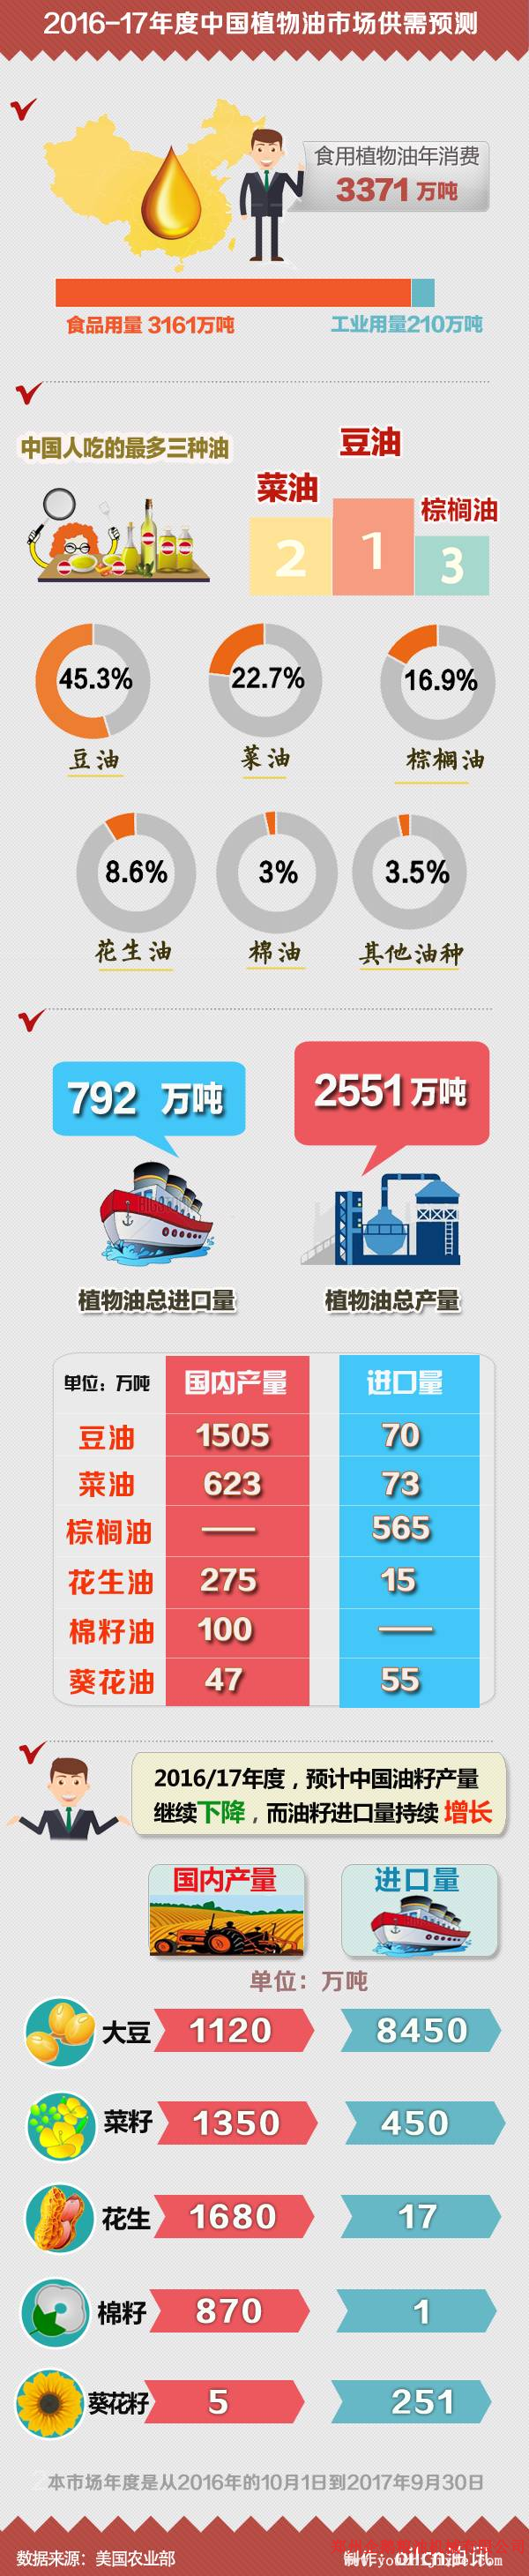 2016/17年度中国油籽、油粕及油脂市场全面展望(图1)